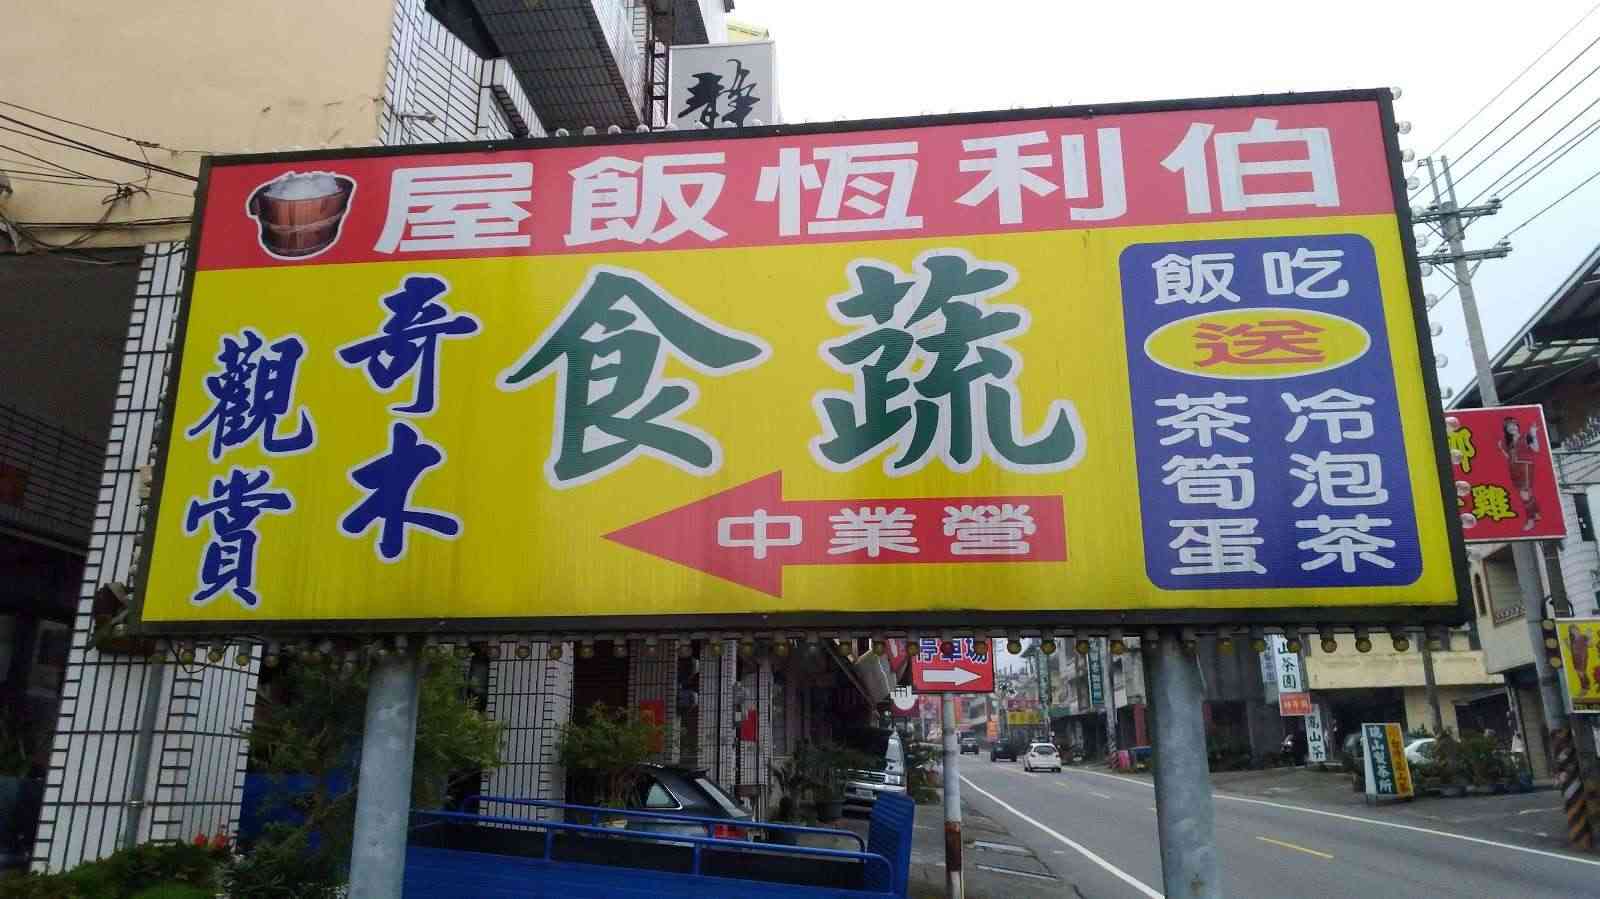 伯利恆茶藝餐廳/ 攝影者: 日本語ドライバー兼ガイドマルコ

(由第三方資訊提供)